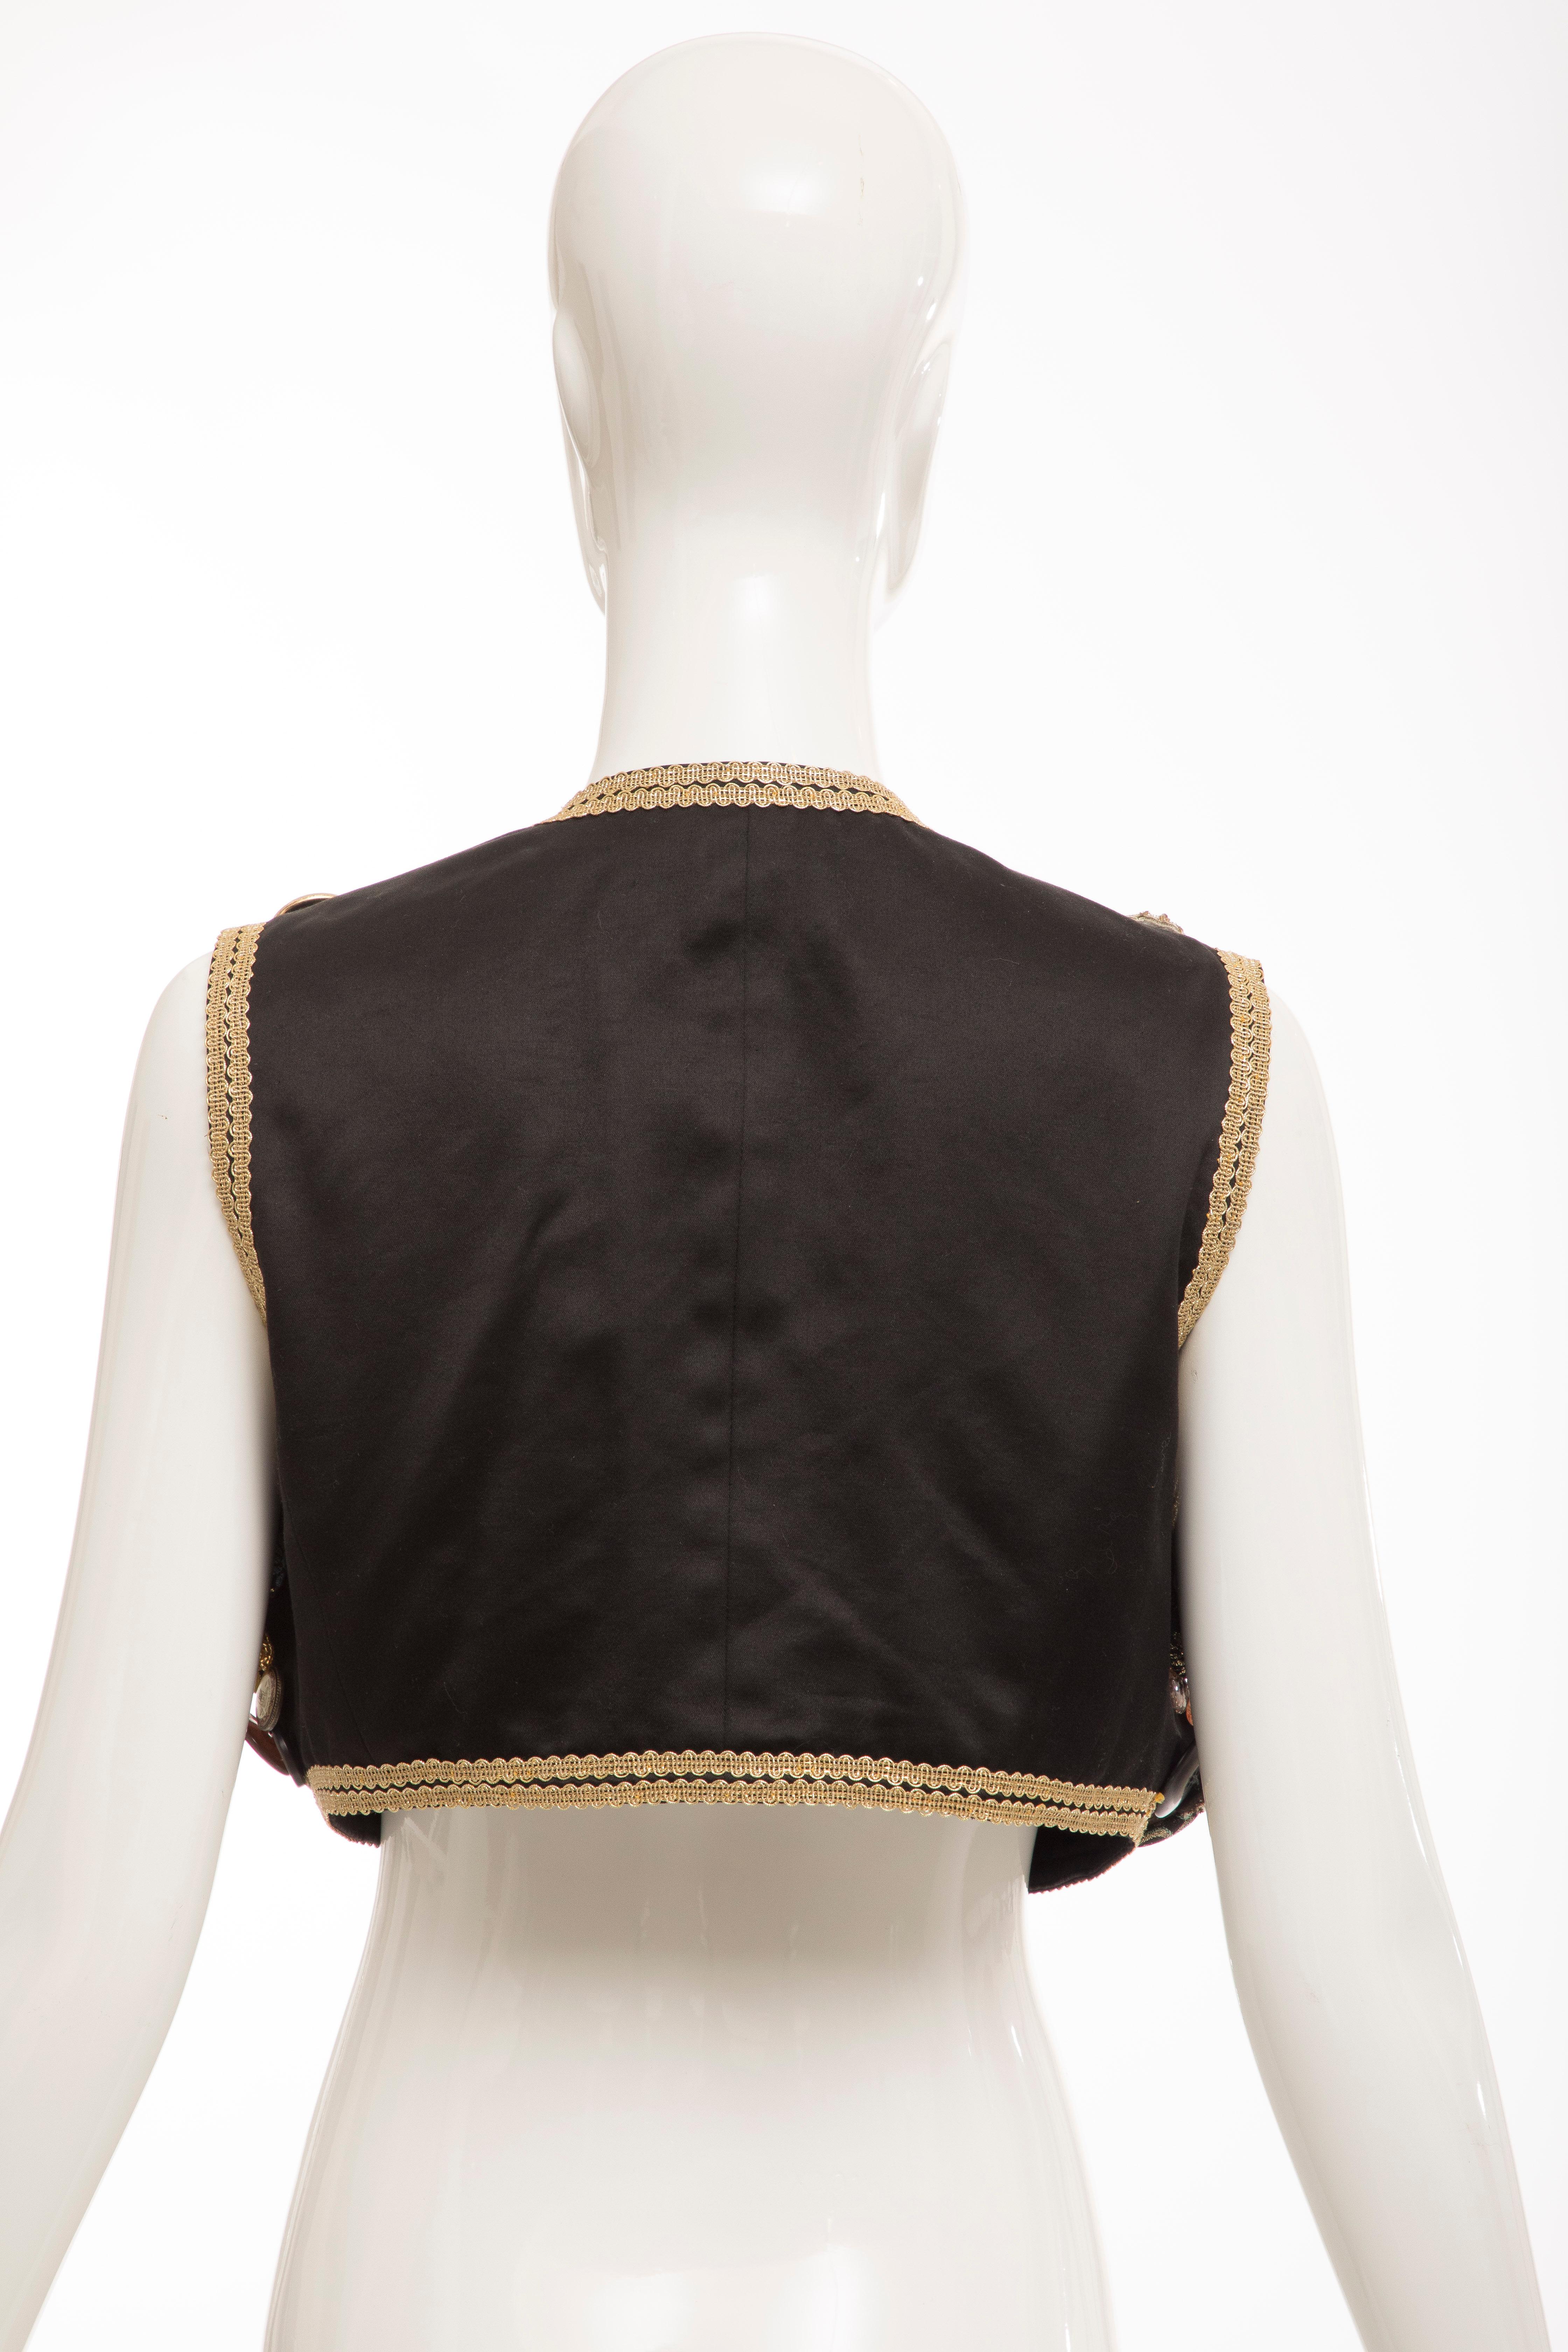 Dolce & Gabbana Black Multi Button Cotton Vest, Circa: 1990's For Sale 4